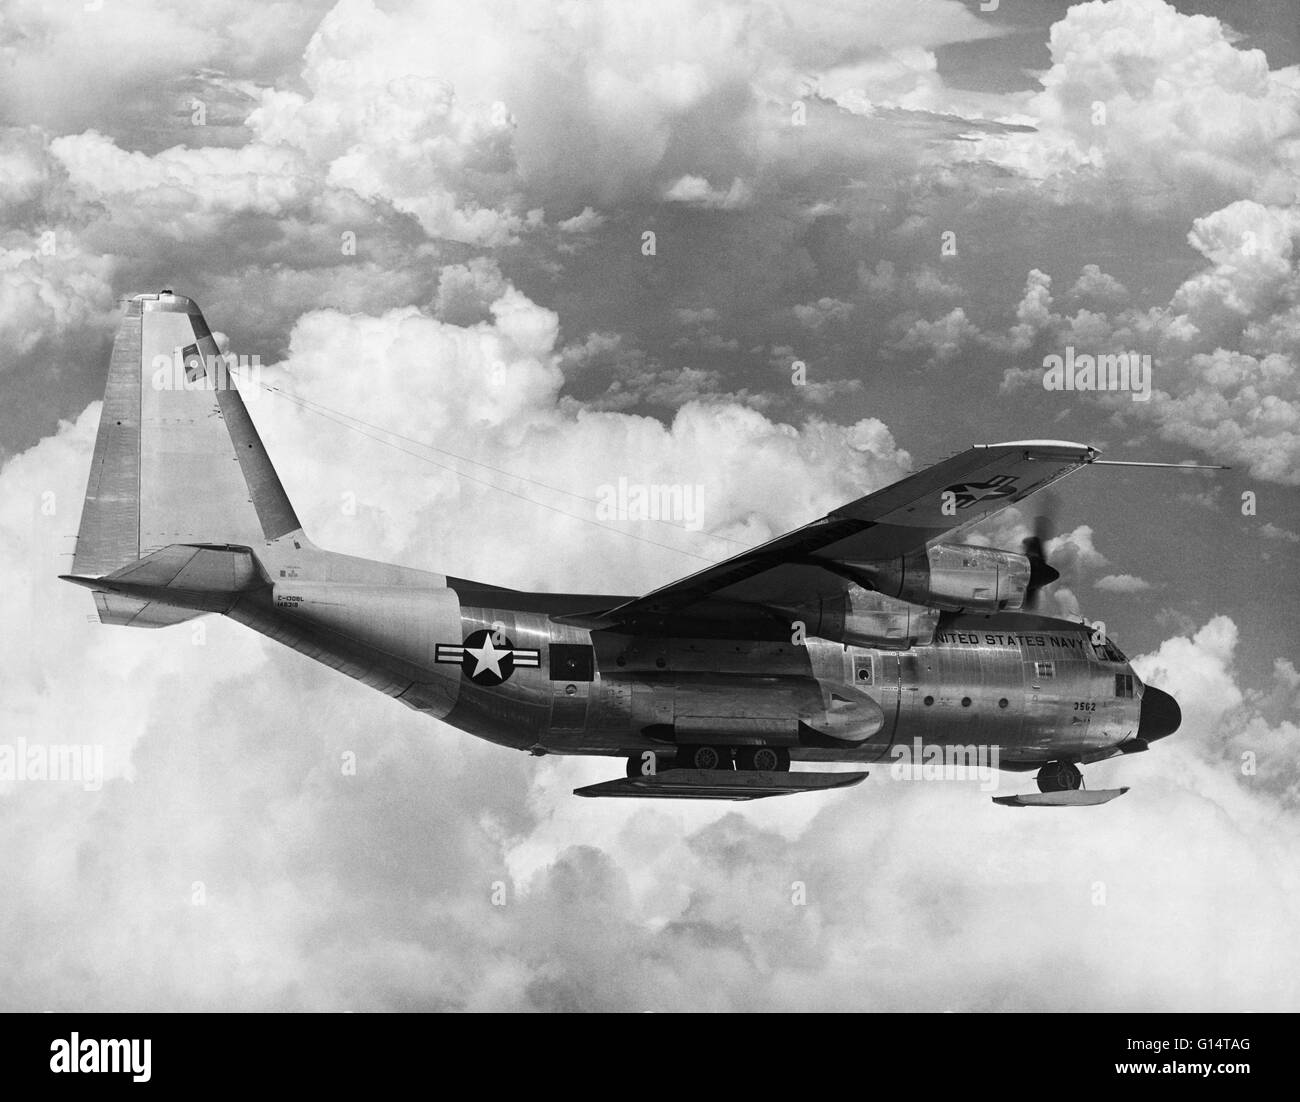 Die Lockheed C-130 Hercules ist ein viermotoriges Turboprop militärische Transportflugzeuge entwickelt und ursprünglich von Lockheed, jetzt Lockheed Martin gebaut. In der Lage, mit unvorbereitet Start-und Landebahnen für Starts und Landungen, der c-130 wurde ursprünglich als eine Truppe entworfen, Stockfoto